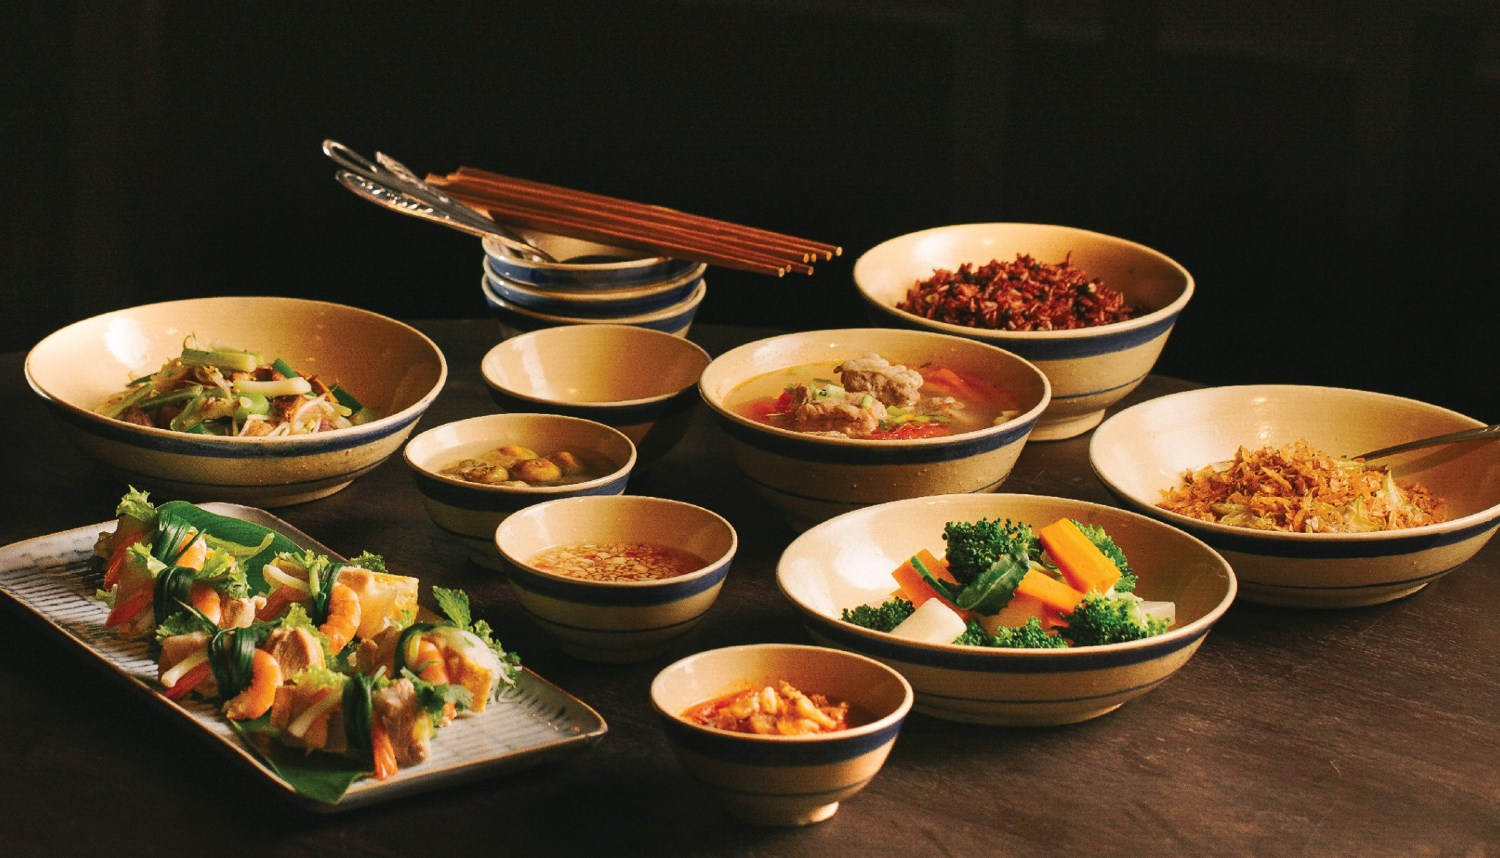 'Tầm Vị' - From Family Dinner To Michelin-Star Restaurants
